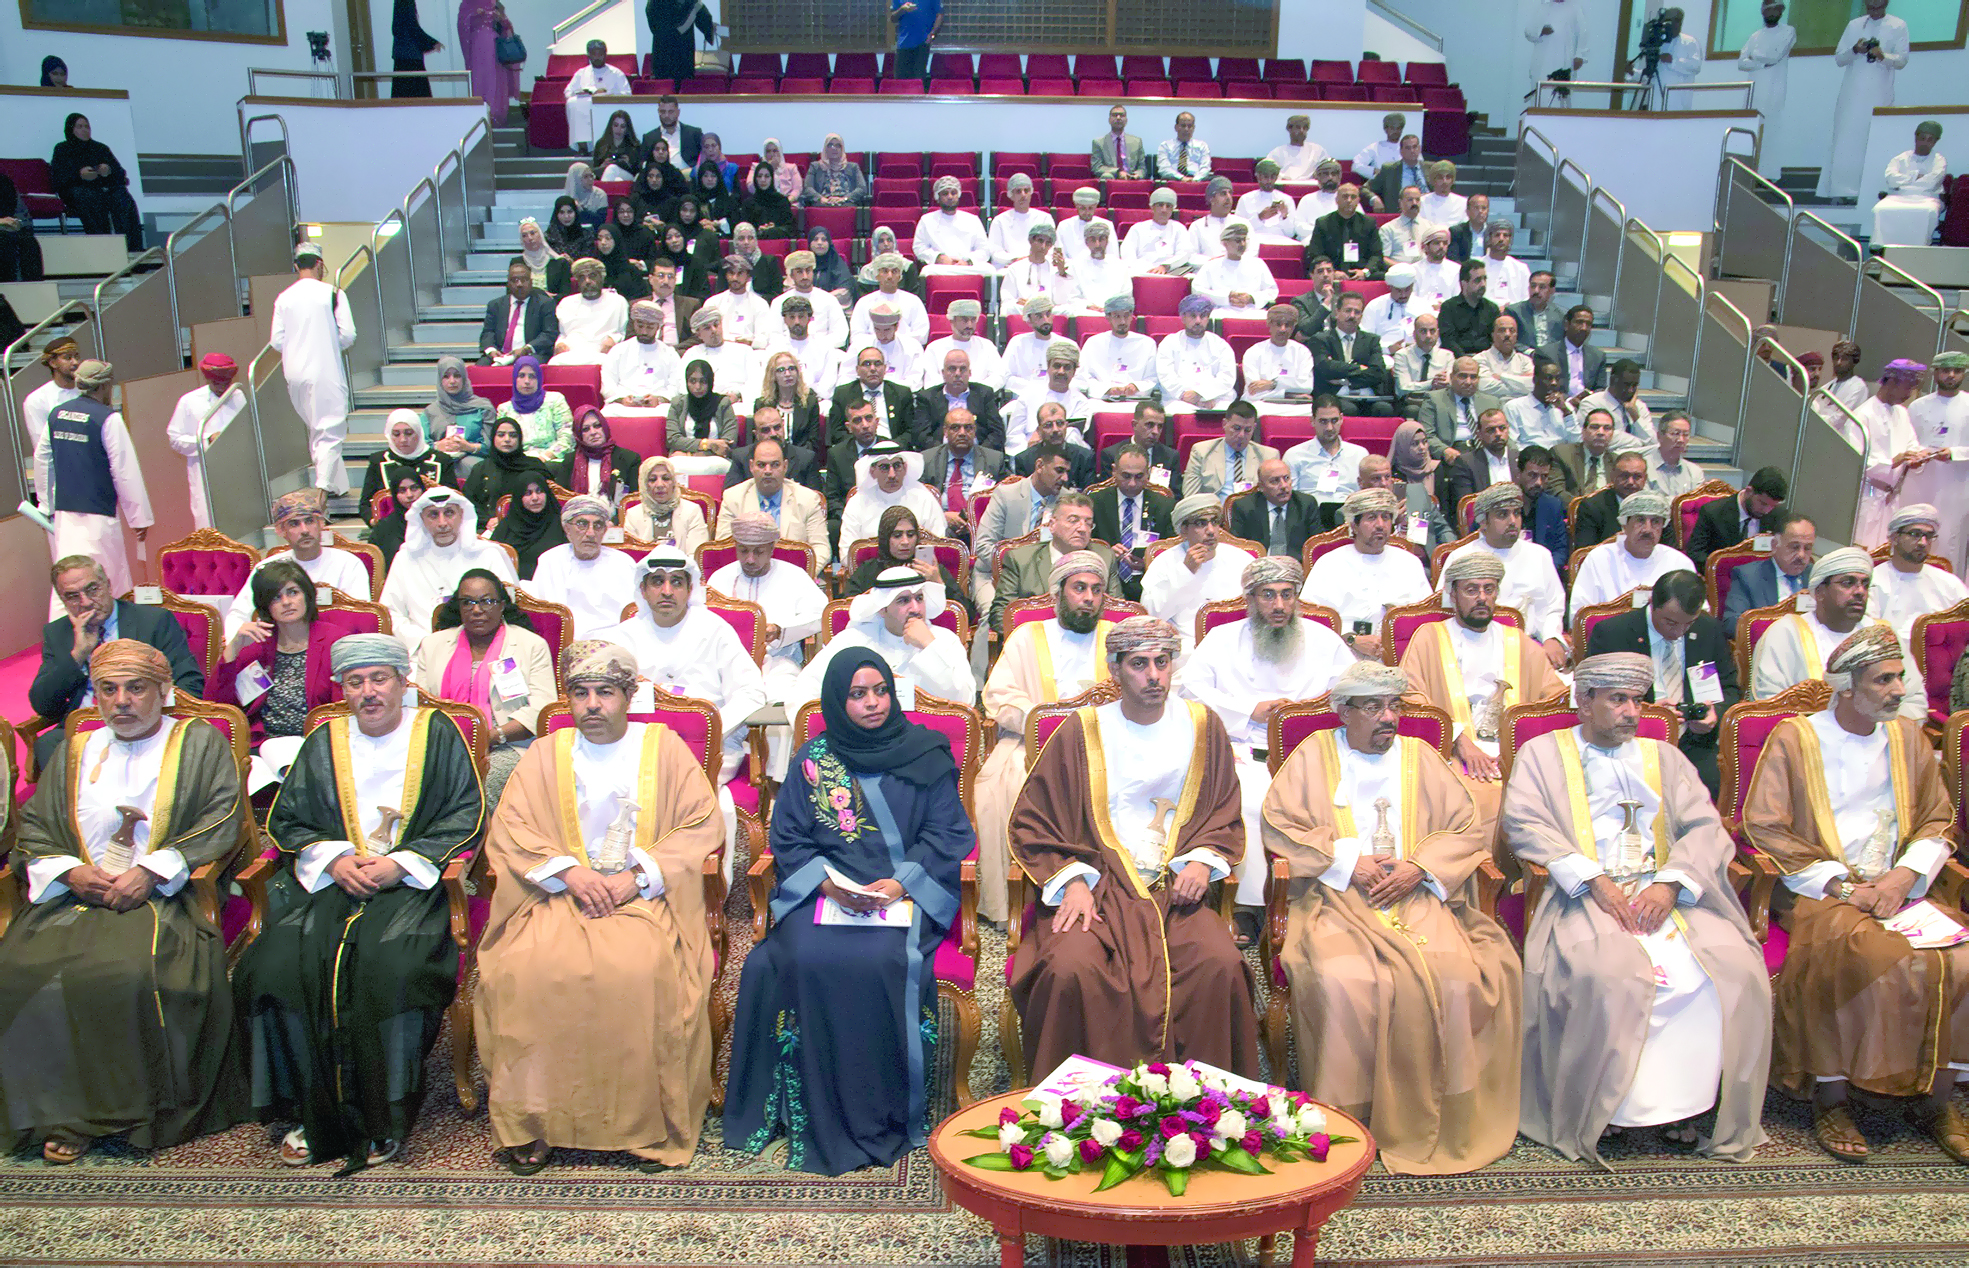 يناقش الرياضة والتنمية المستدامة..
"تربية" جامعة السلطان قابوس تعقد مؤتمرها الخامس